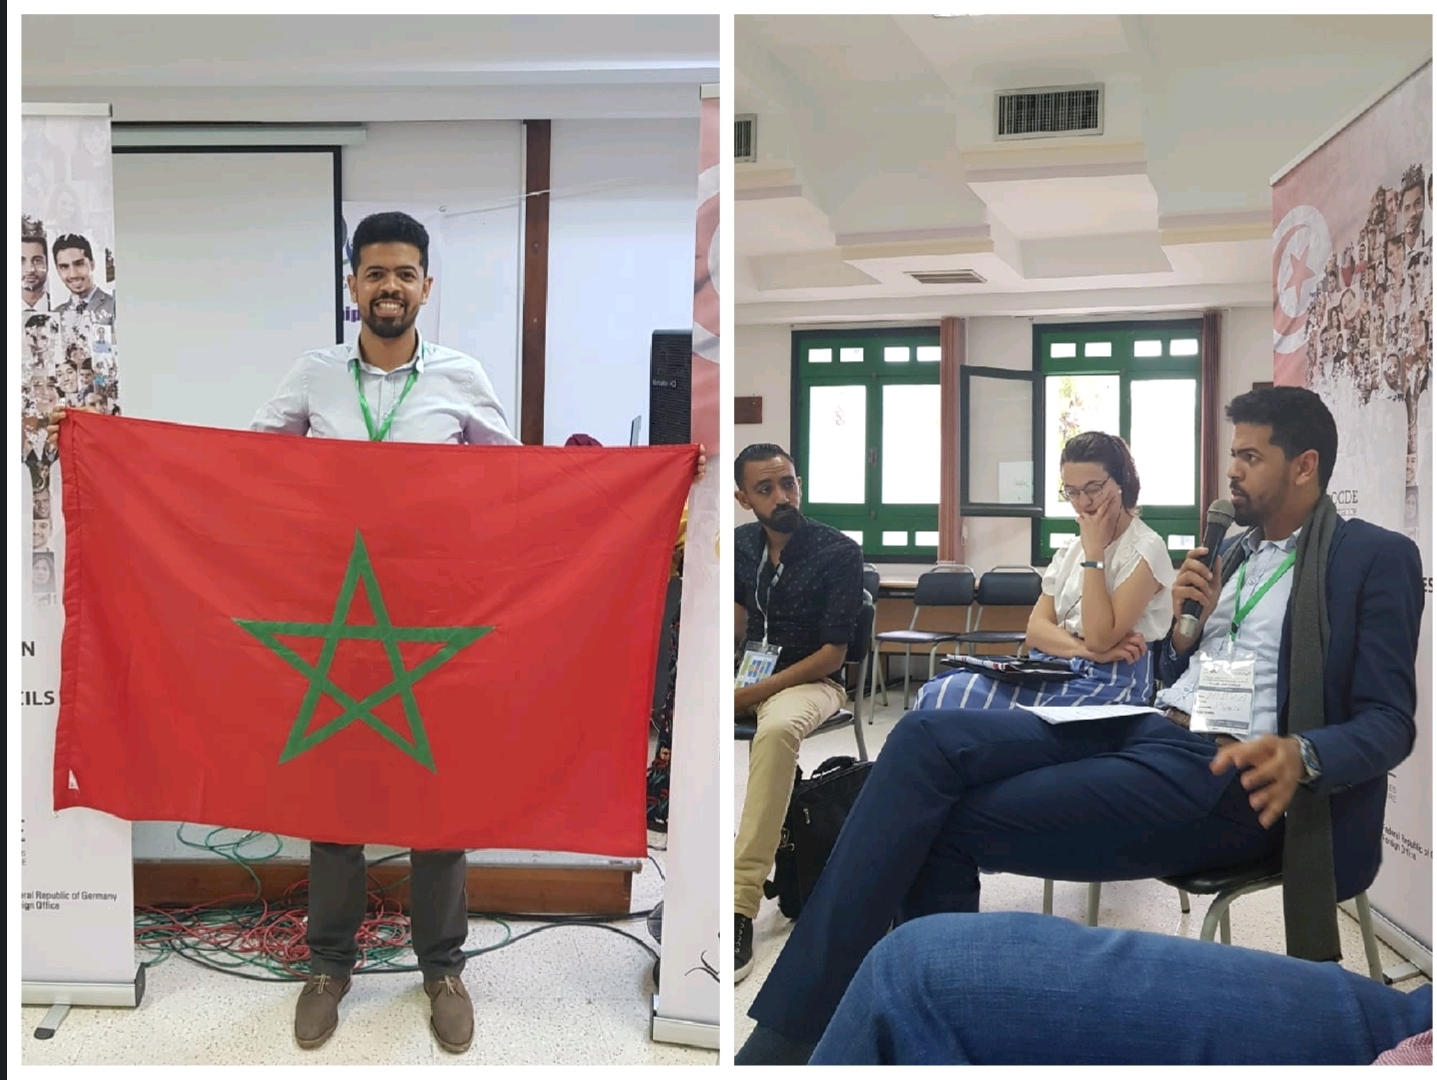 حمزة رويجع يستعرض في ملتقى دولي بتونس التجربة المغربية في مجال الديمقراطيةو إشراك الشباب في الحياة العامة  